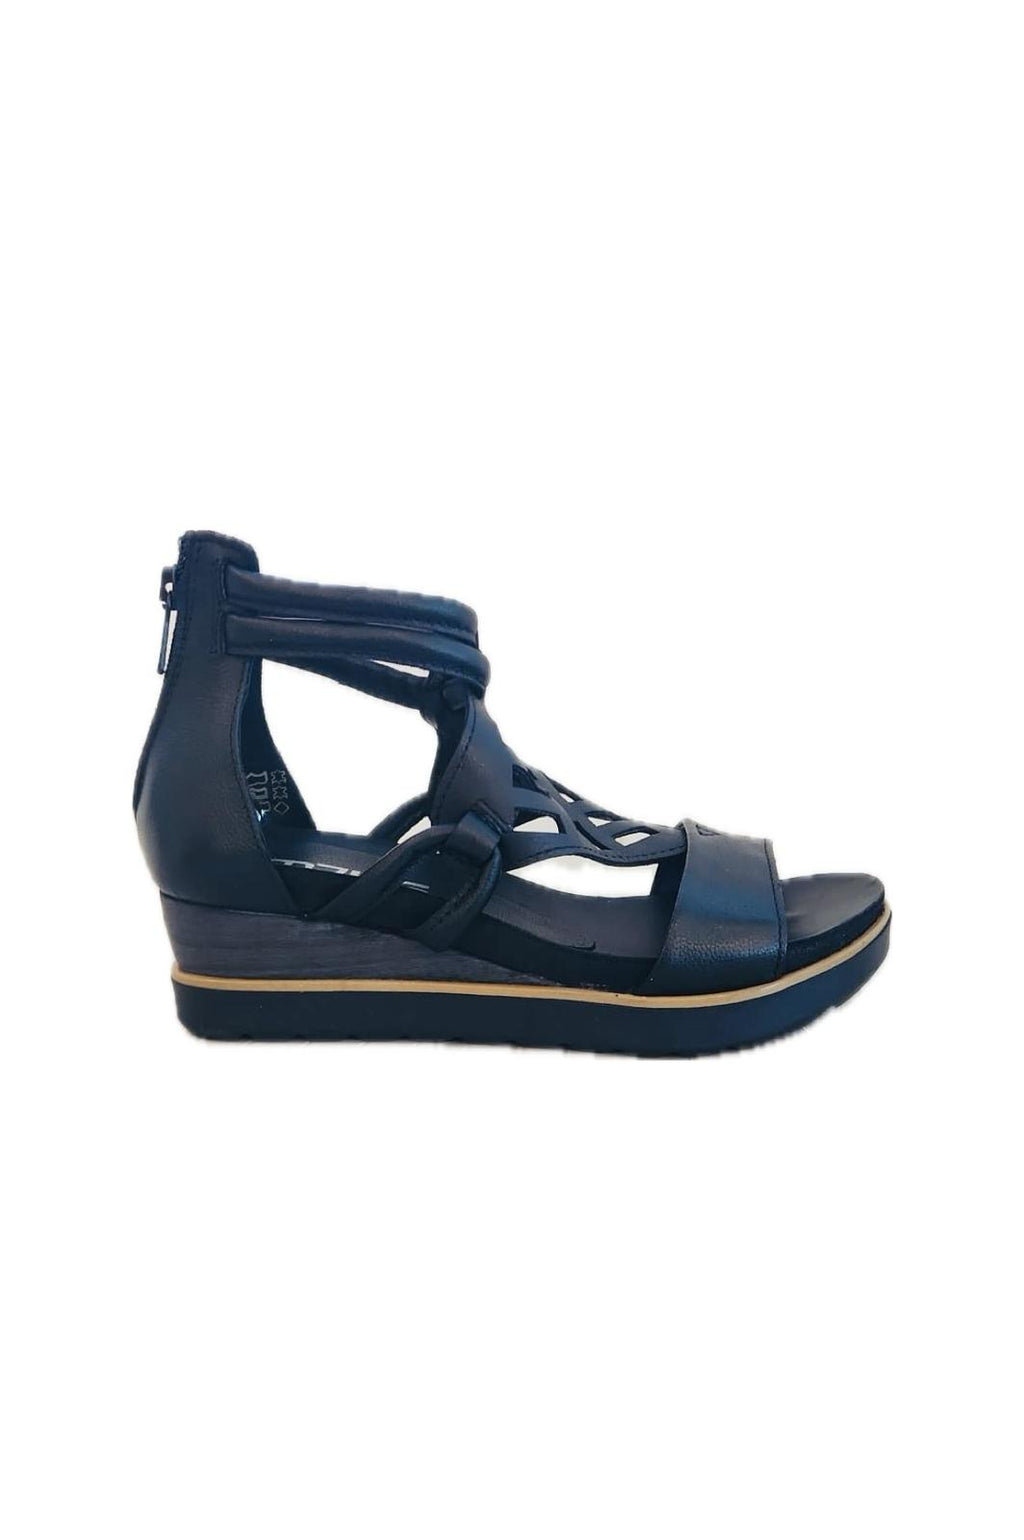 Mjus  L-28007-202 Wedge sandal black leather